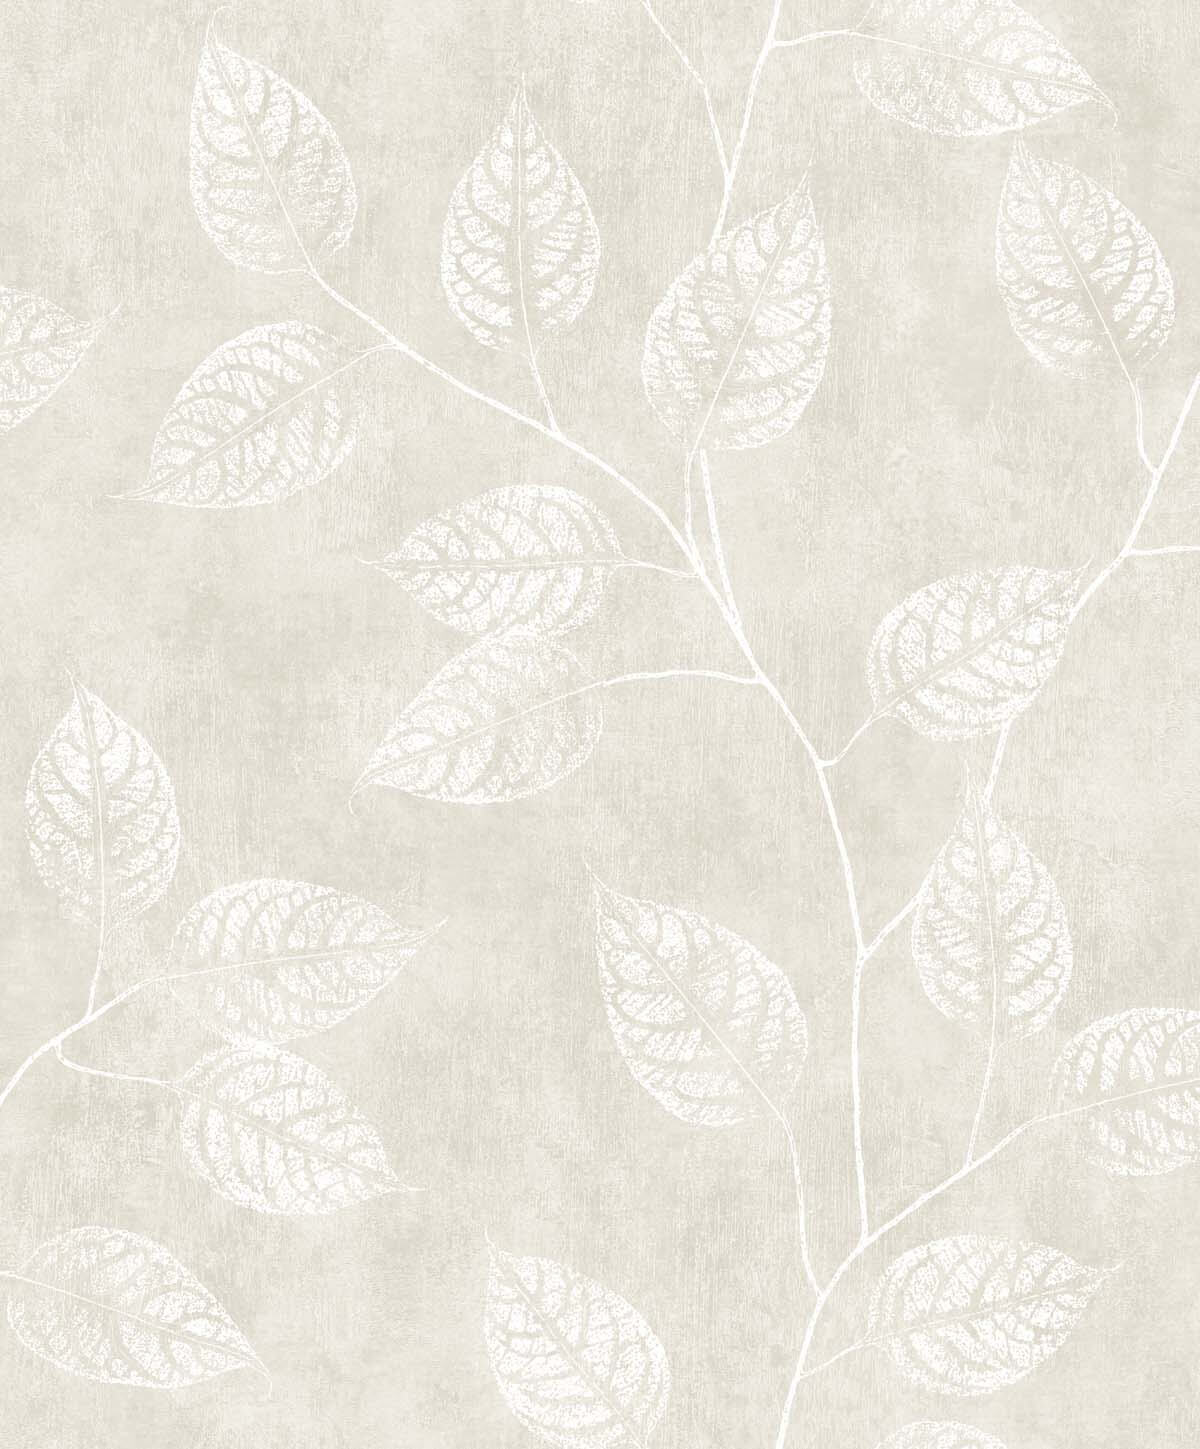 White Heron Branch Trail Silhouette Wallpaper - Raw Linen